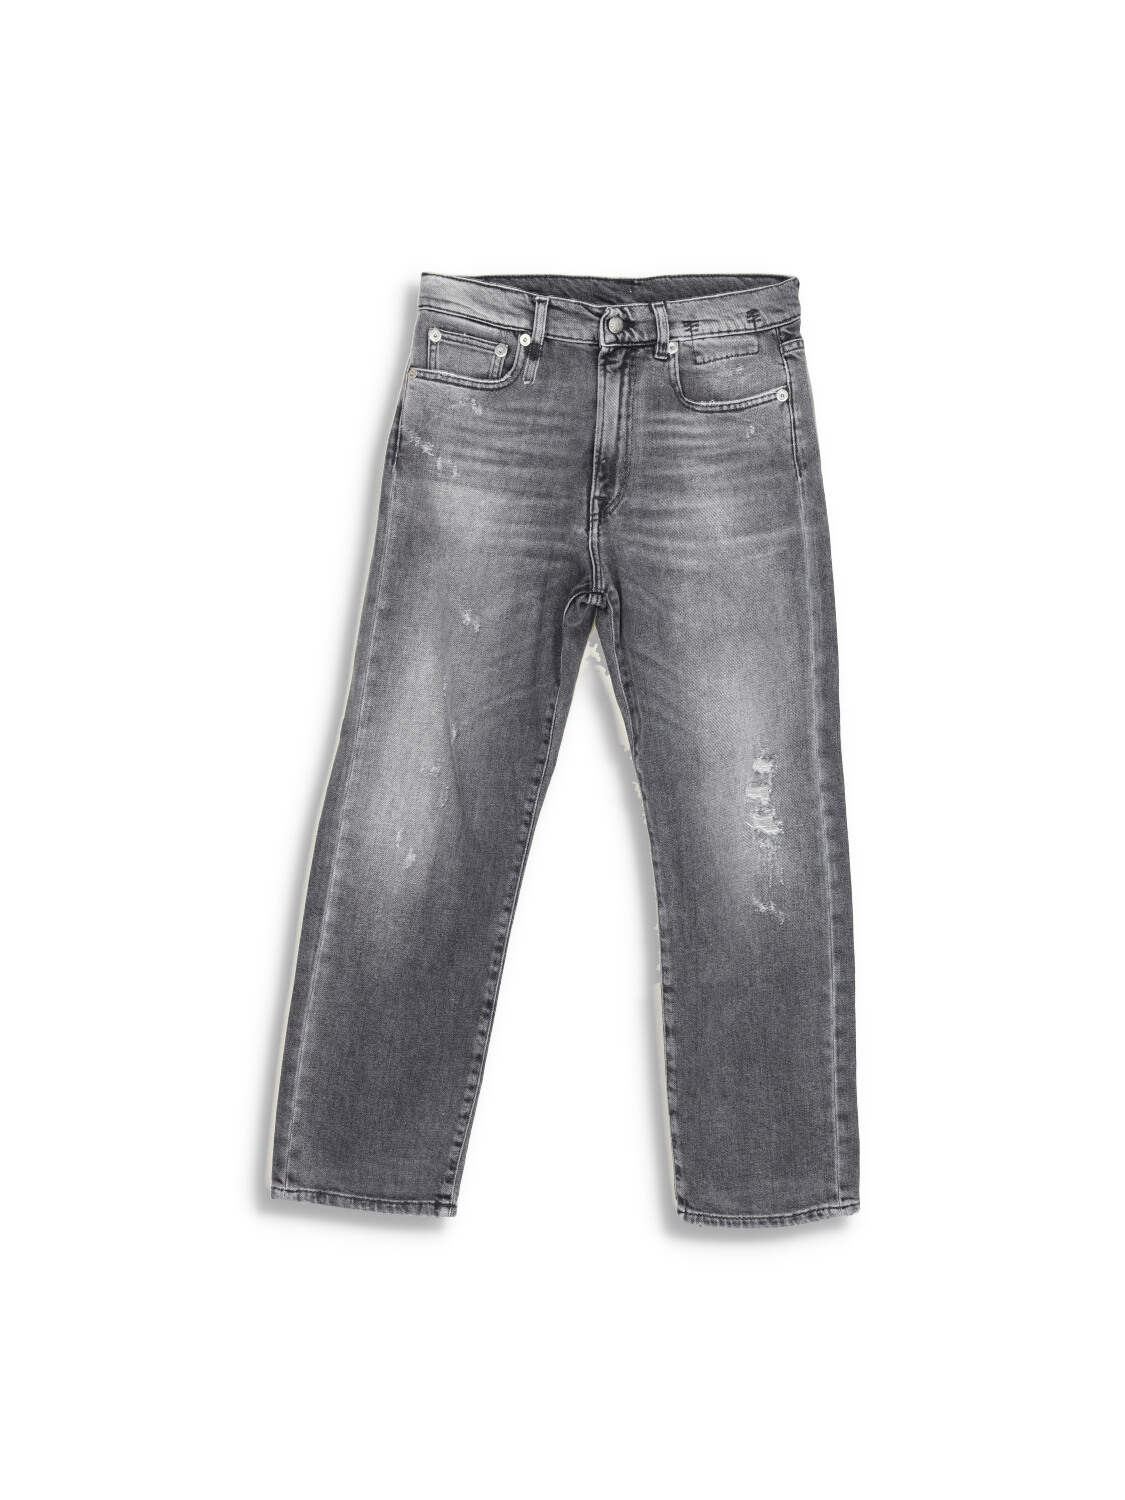 R13 Boyfriend Jeans - Graue Boyfriend Jeans im Destroyed Look  grey 26